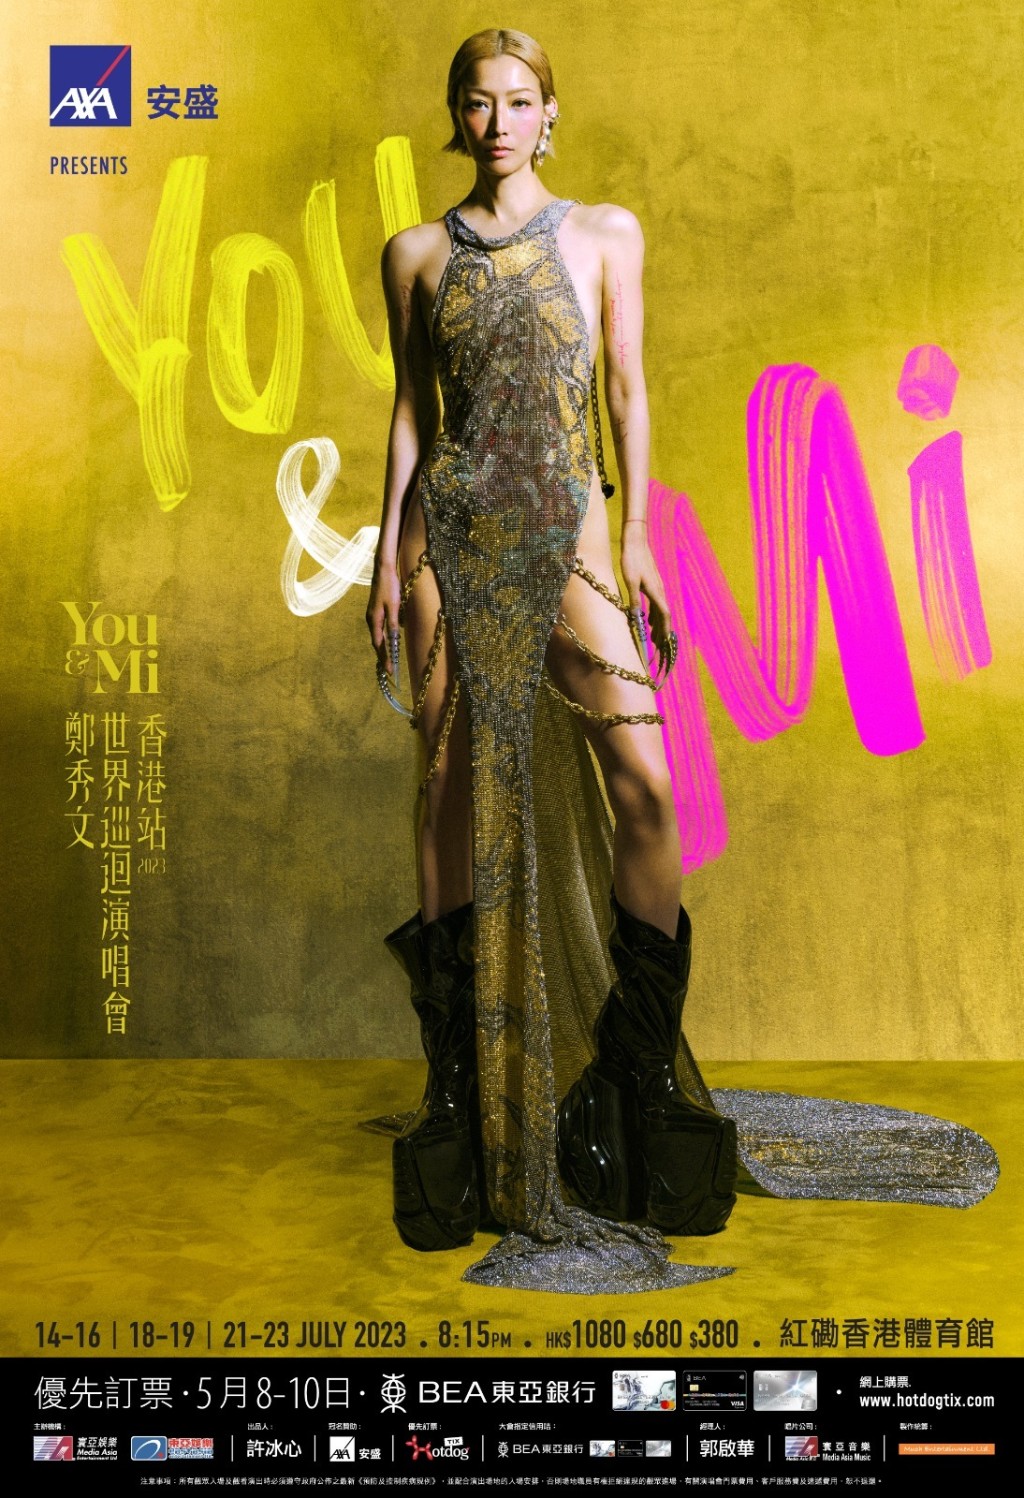 鄭秀文將於7月14至16、18至19、21至23日假紅館舉行《You & Mi 鄭秀文世界巡迴演唱會香港站 2023》。